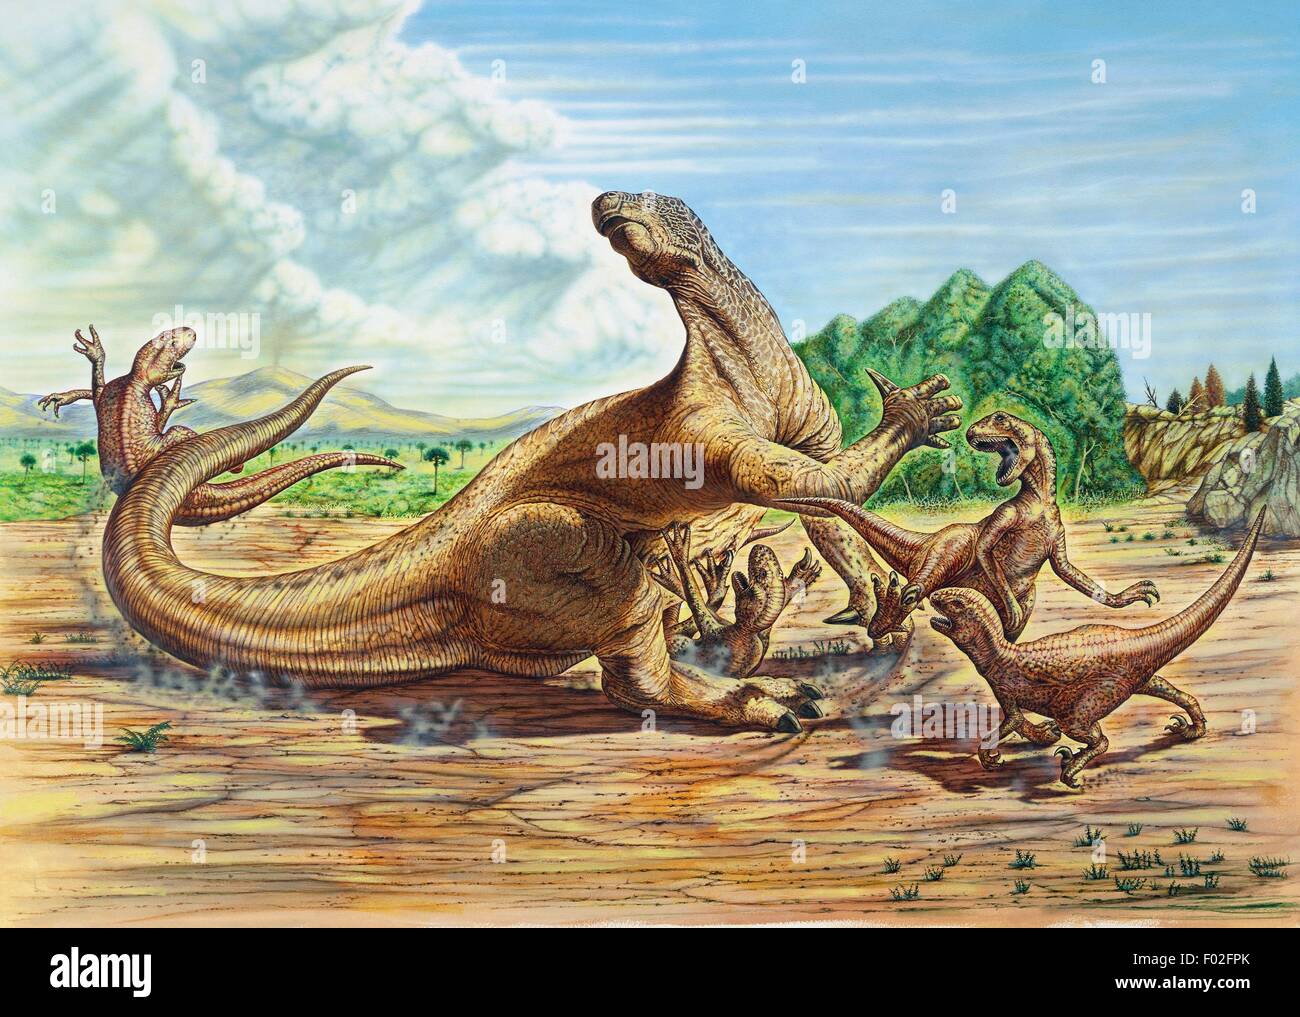 Iguanodon sp, Iguanodontidae, attaqué par des petits dinosaures carnivores, début du Crétacé. Illustration de Neil Lloyd. Banque D'Images